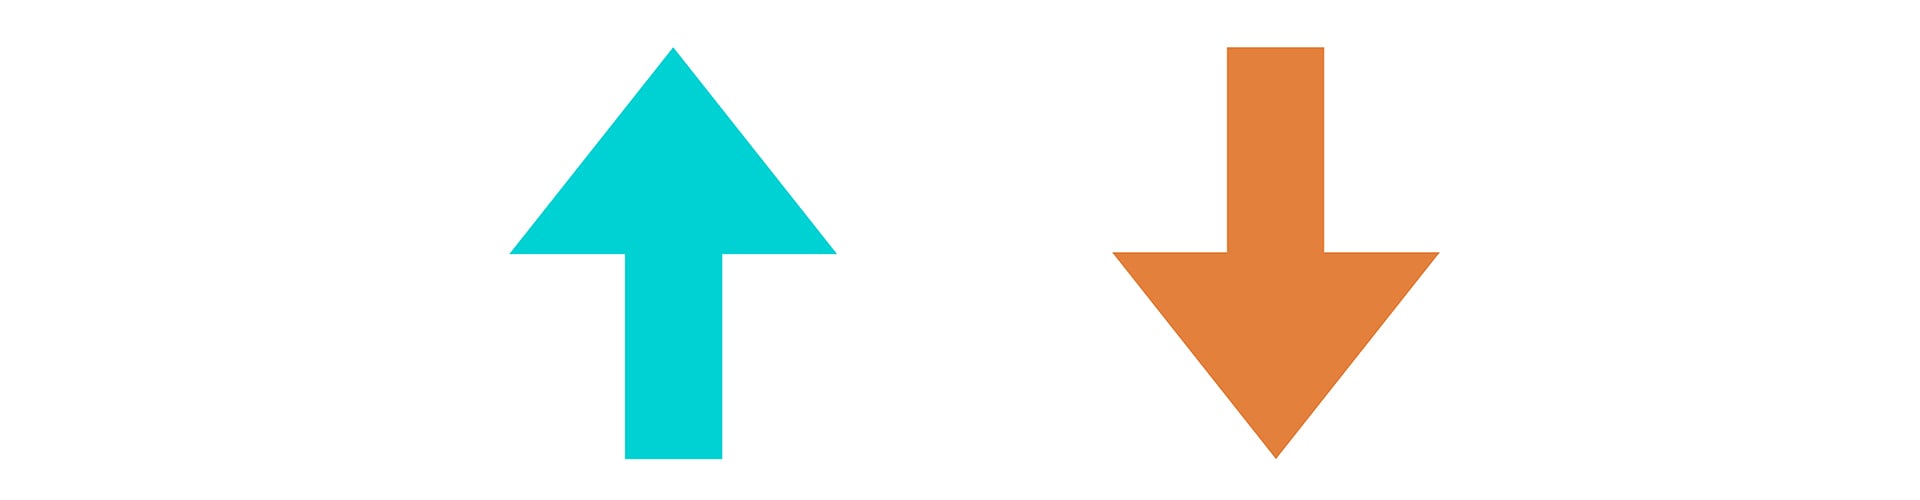 Blue upward arrow next to orange downward arrow